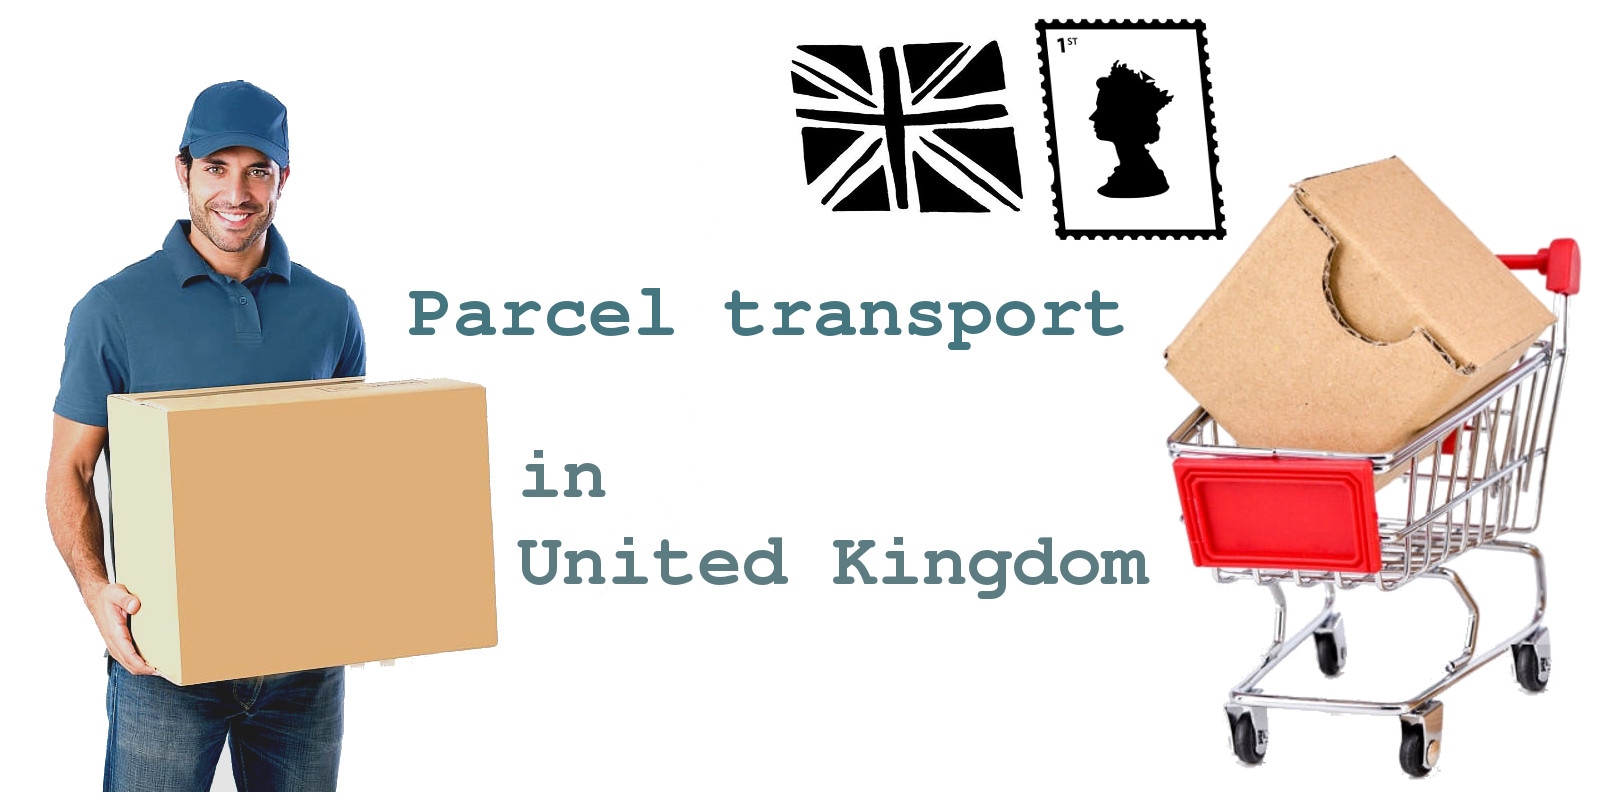 Parcel transport in United Kingdom